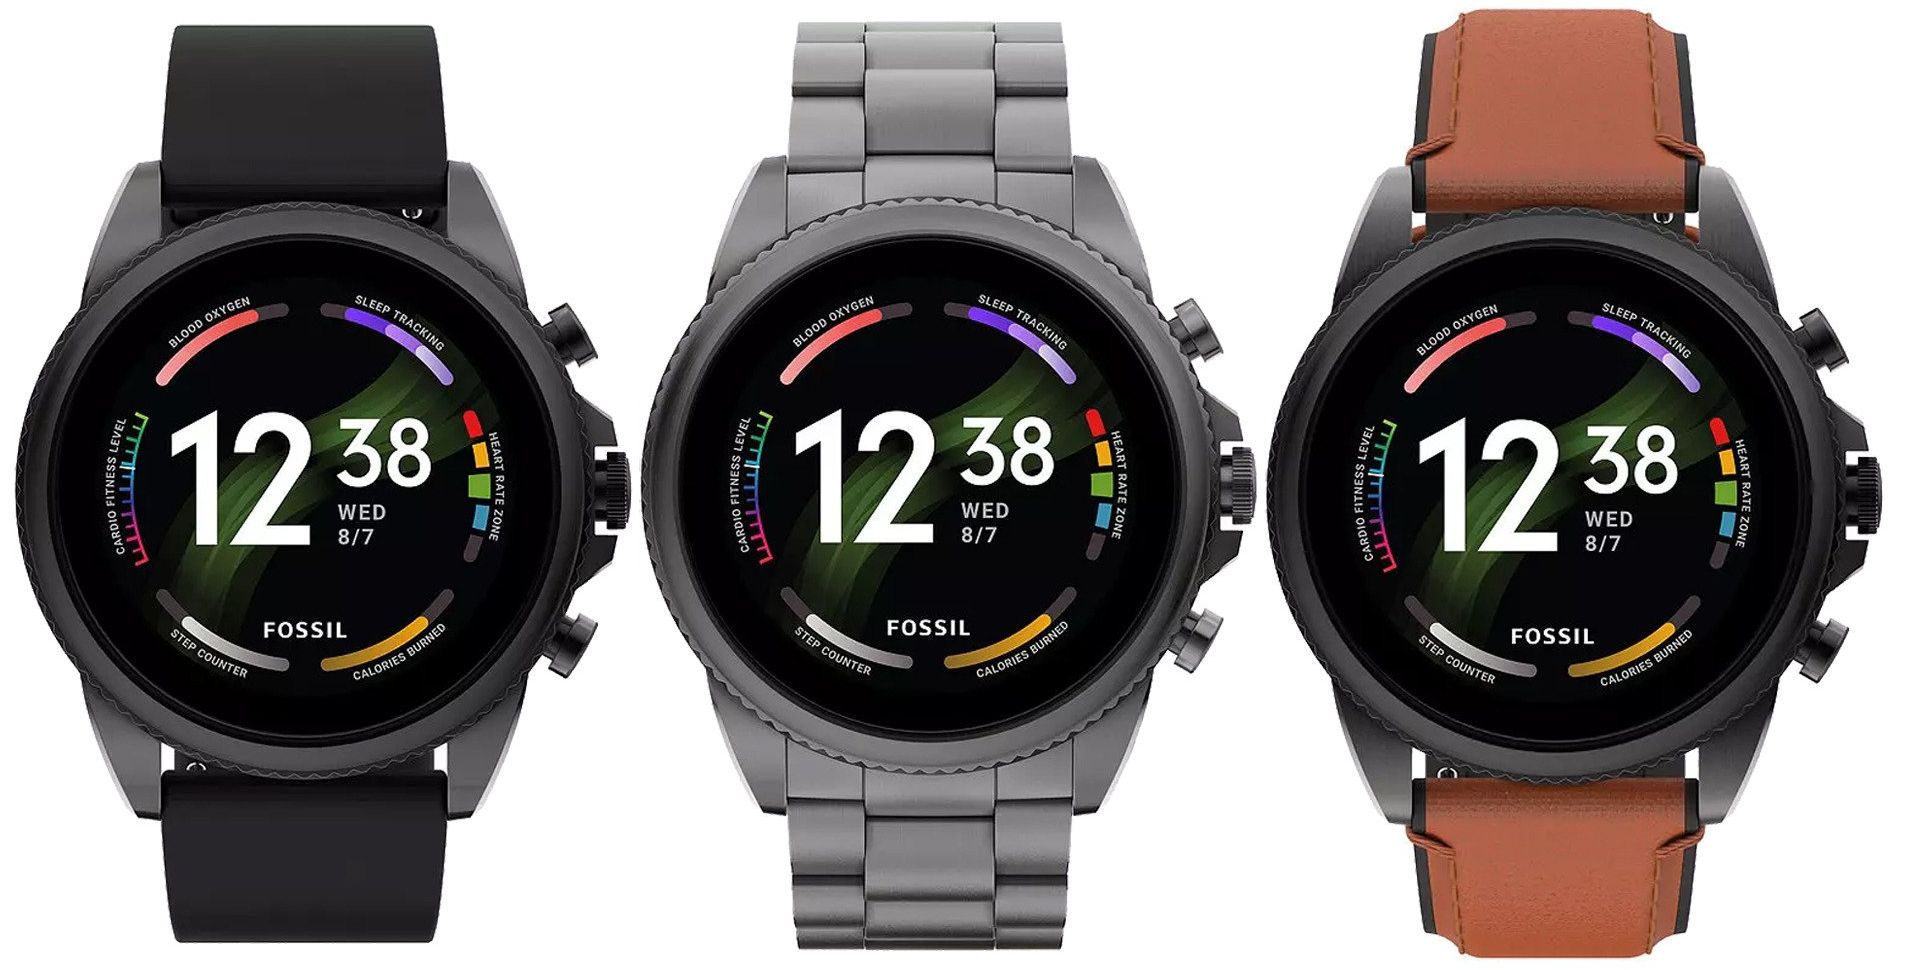 Fossil Gen 6 på Amazon: smartwatch med Snapdragon Wear 4100+ chip, SpO2-sensor, NFC og Wear OS til en nedsat pris på $136